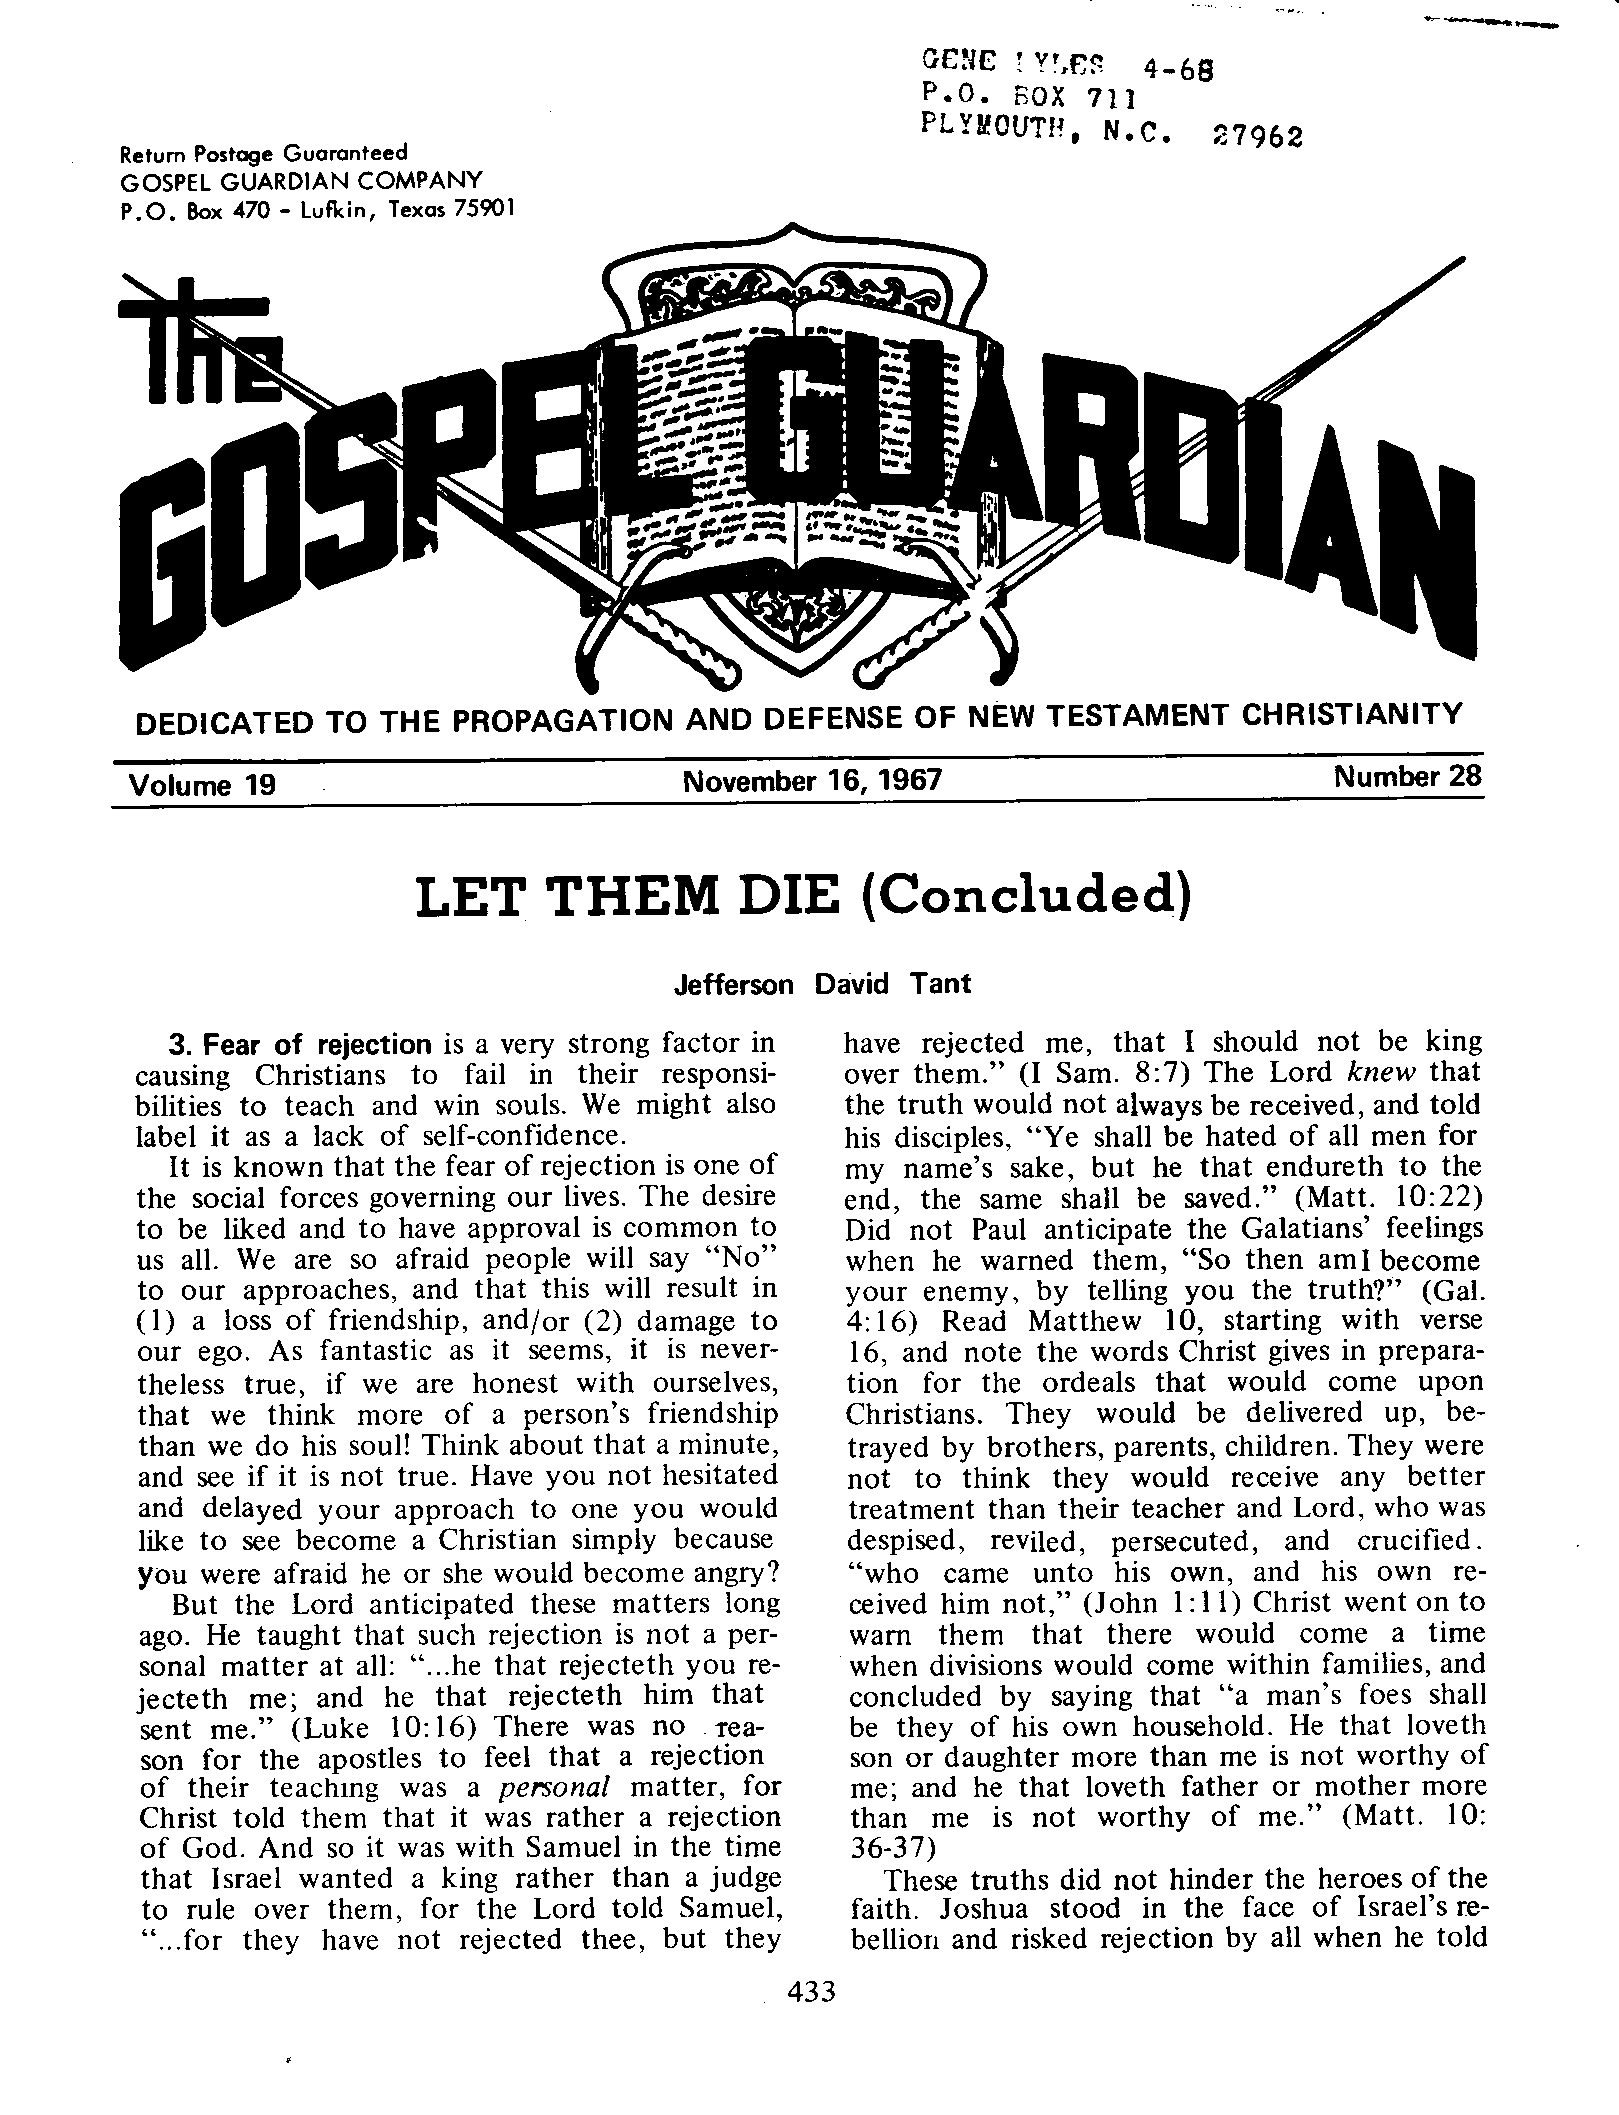 Gospel Guardian Original: Vol.19 No.28 Pg.1